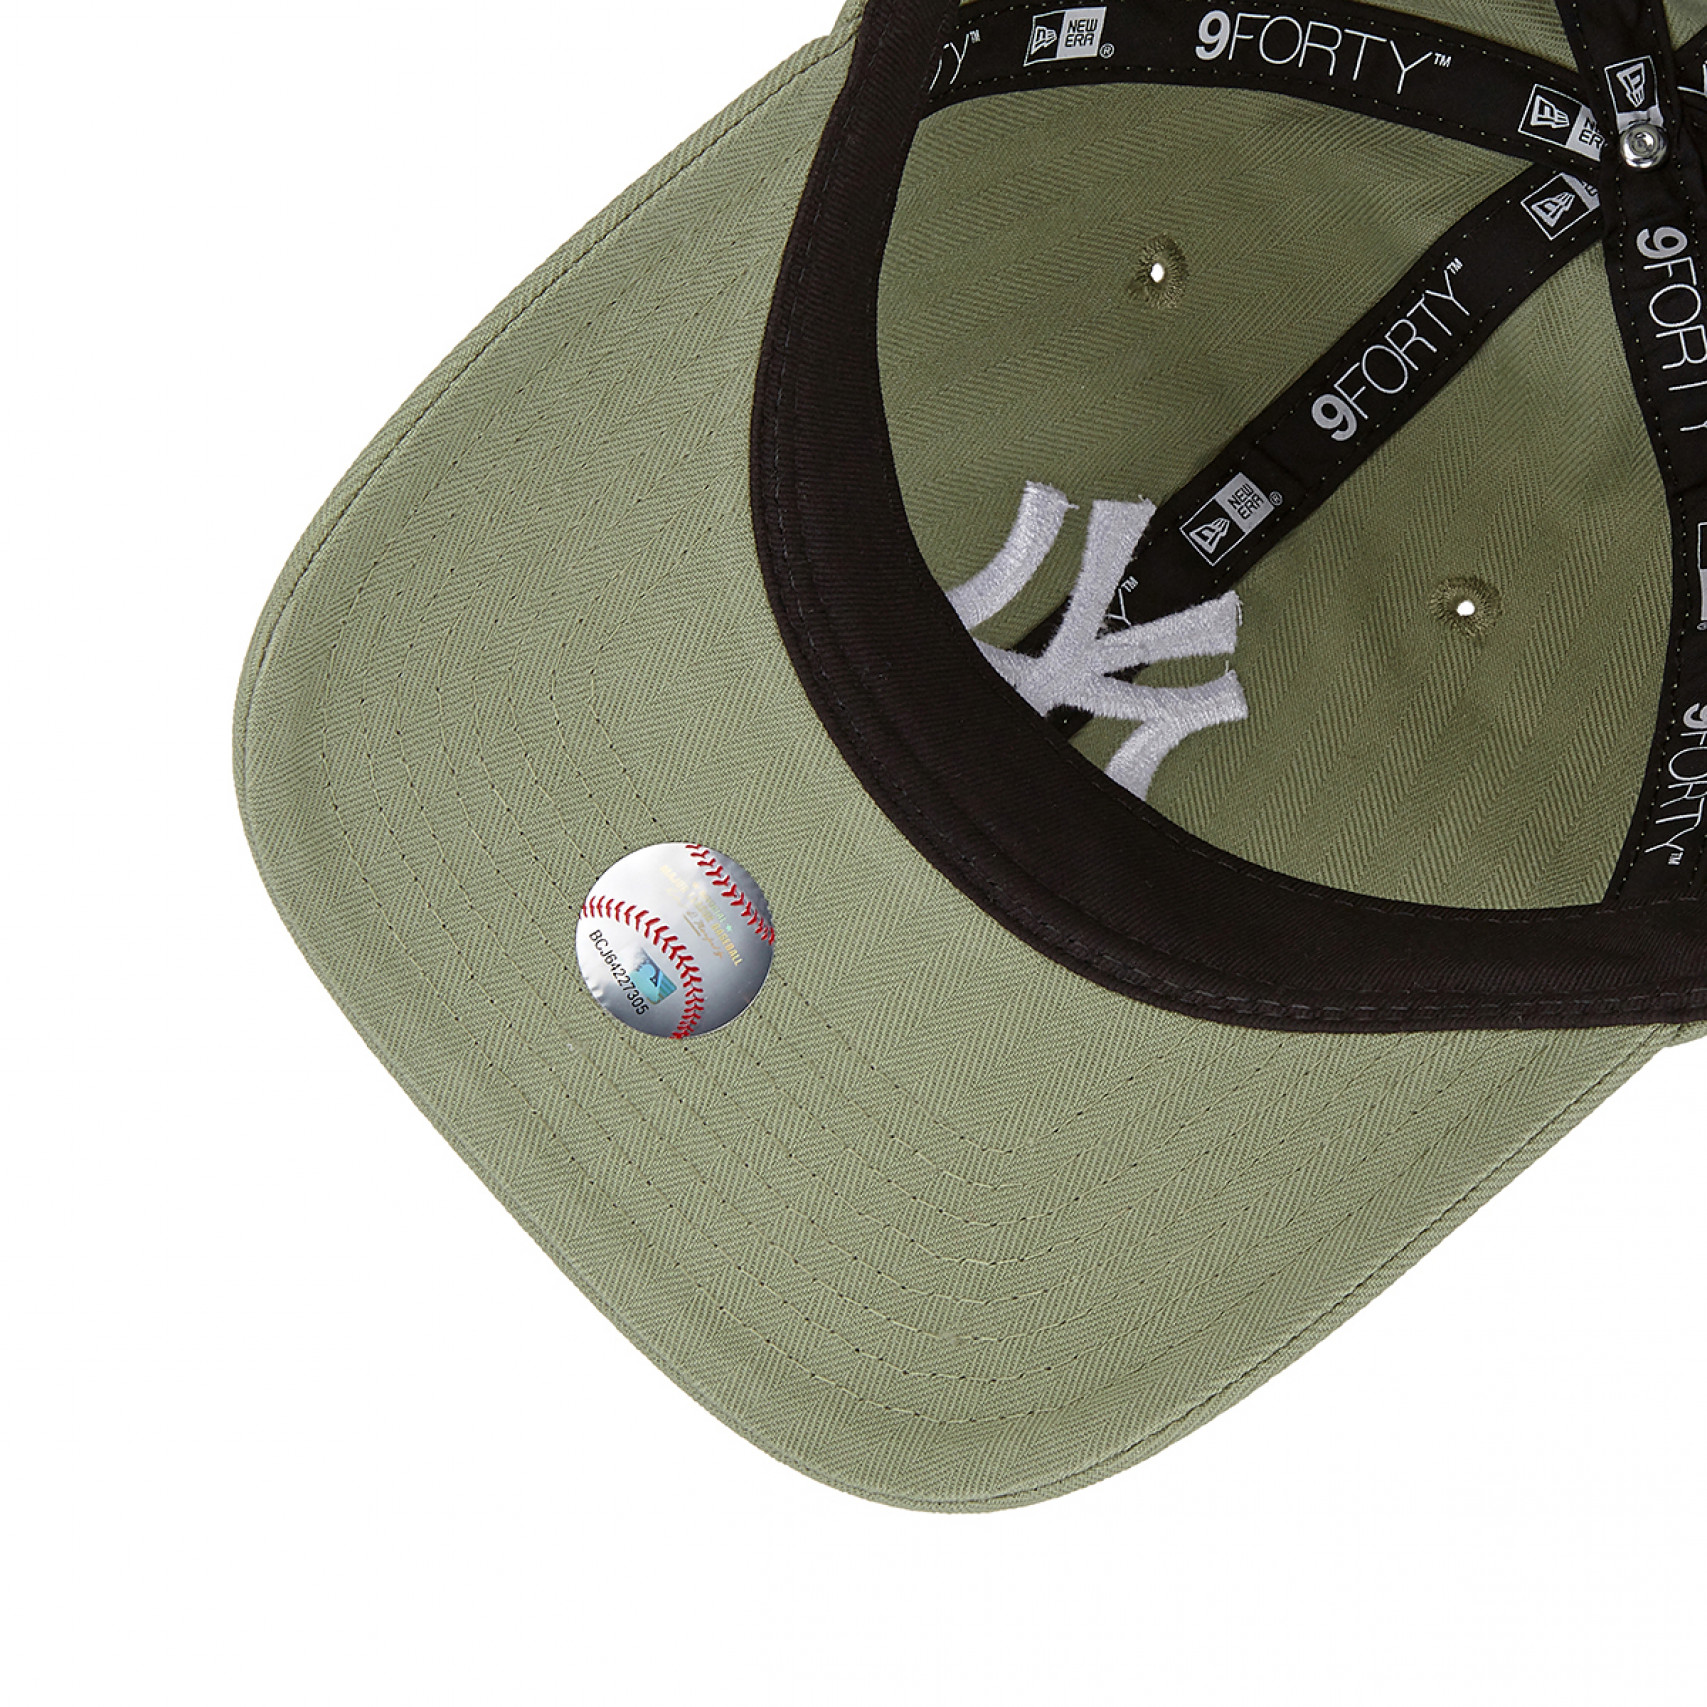 MLB 뉴욕 양키스 빈티지 헤링본 언스트럭쳐 볼캡 애플 그린 / 14205935